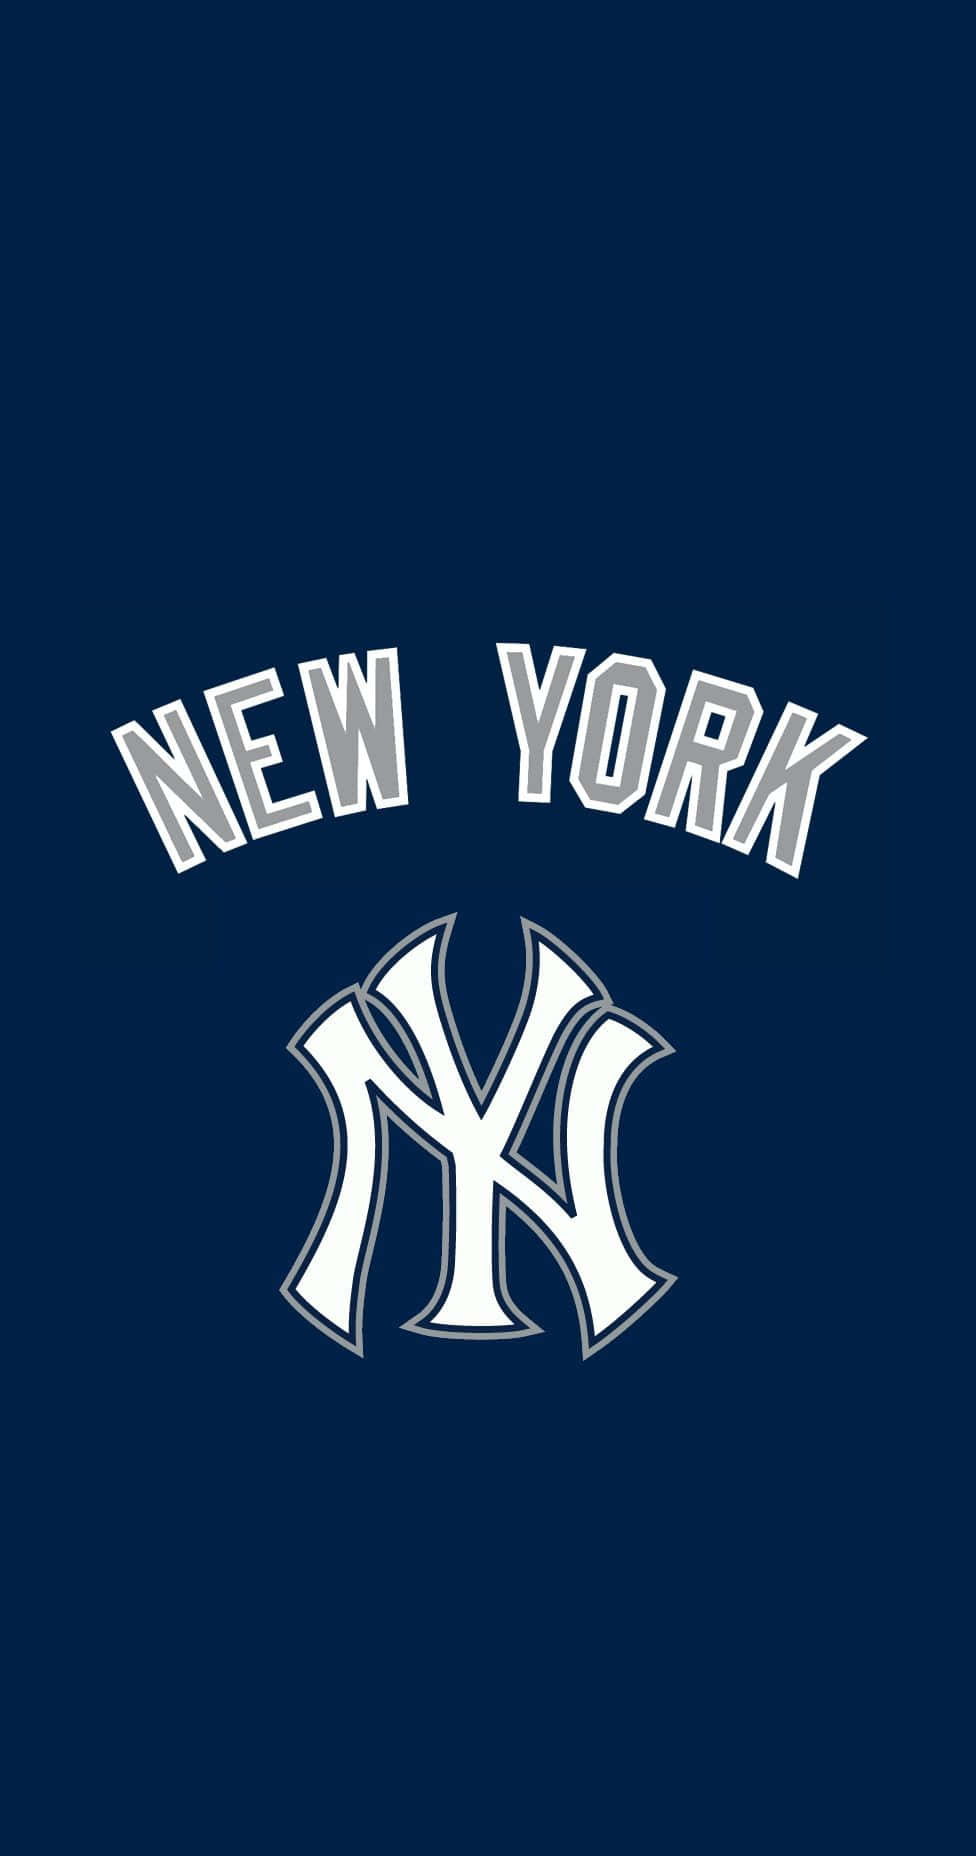 New York Yankees 1947  New york yankees logo New york yankees Mlb  wallpaper